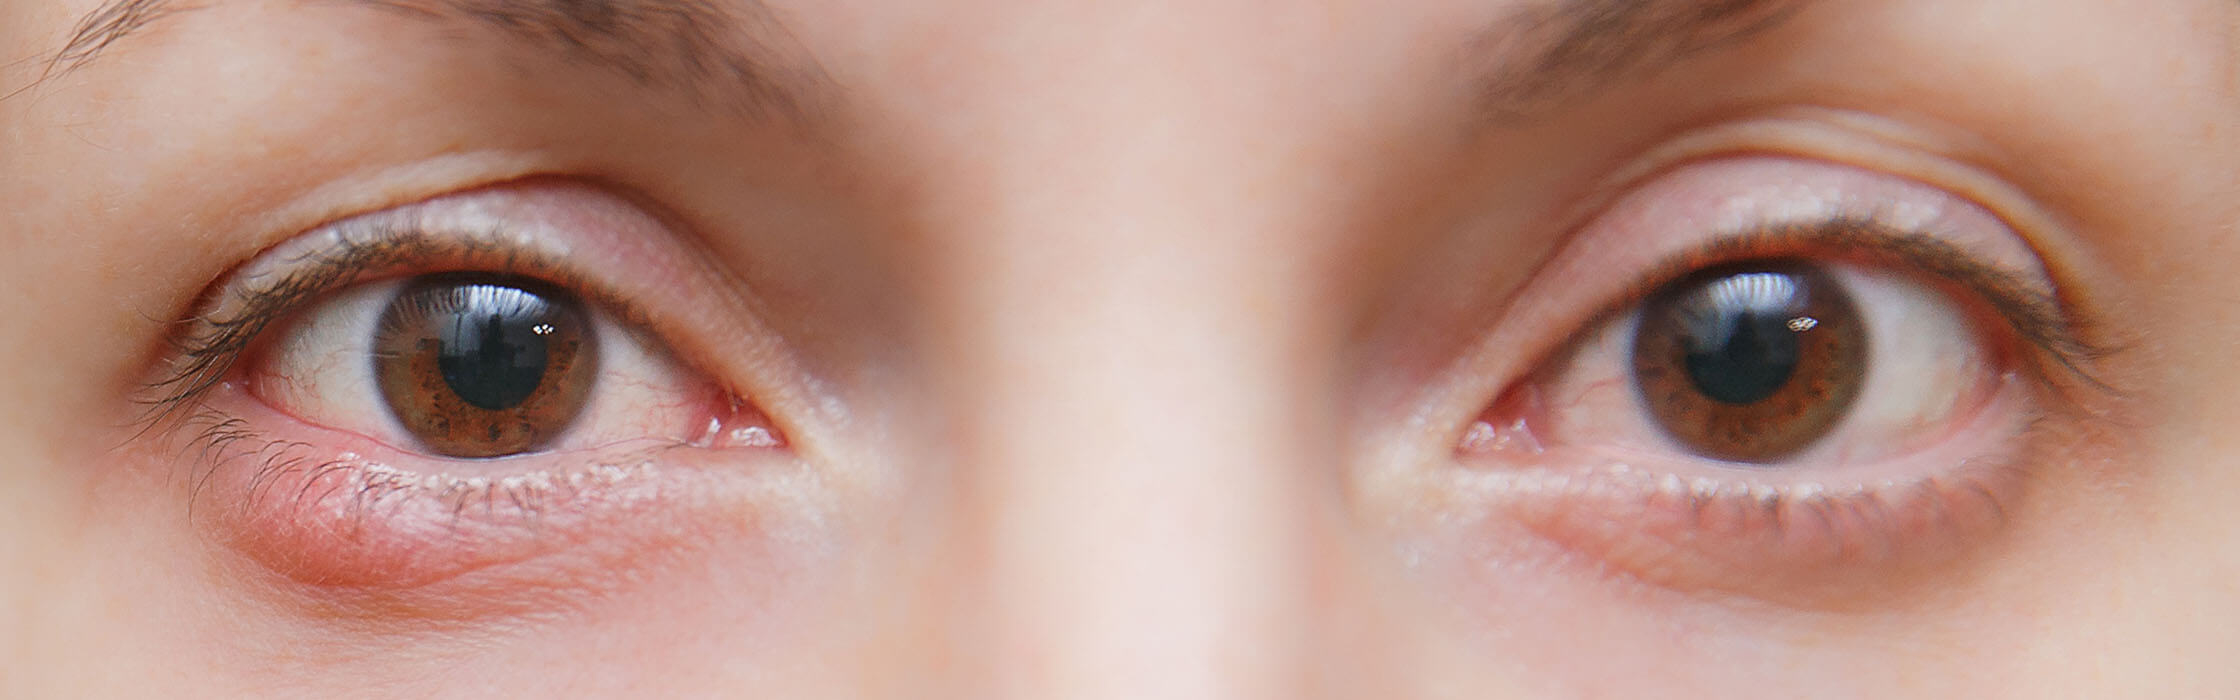 Twee bruine ogen met een strontje op het linker ooglid

        